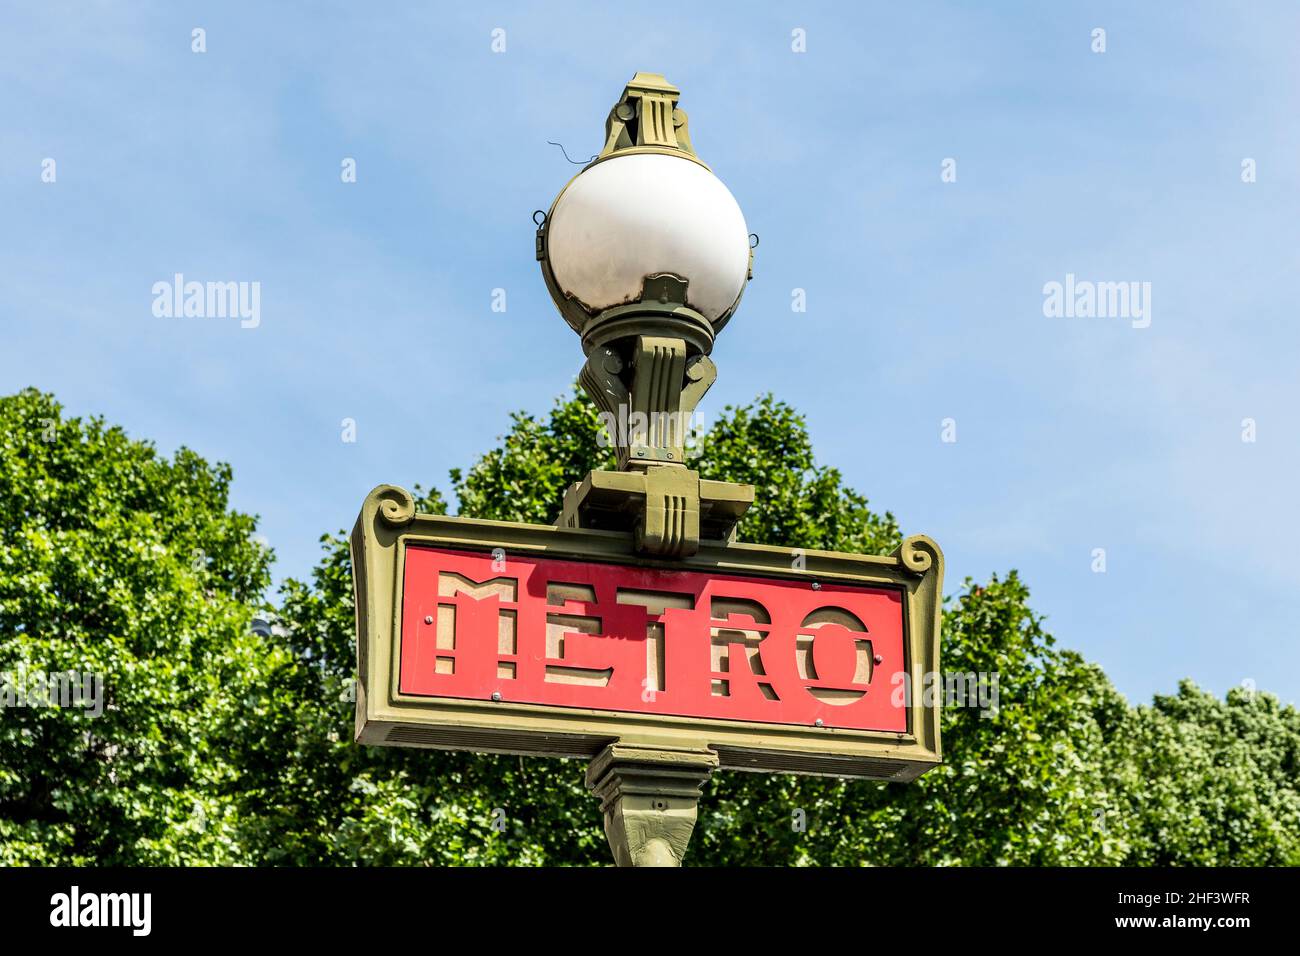 Métro parisien signe avec un lampadaire contre le ciel bleu Banque D'Images